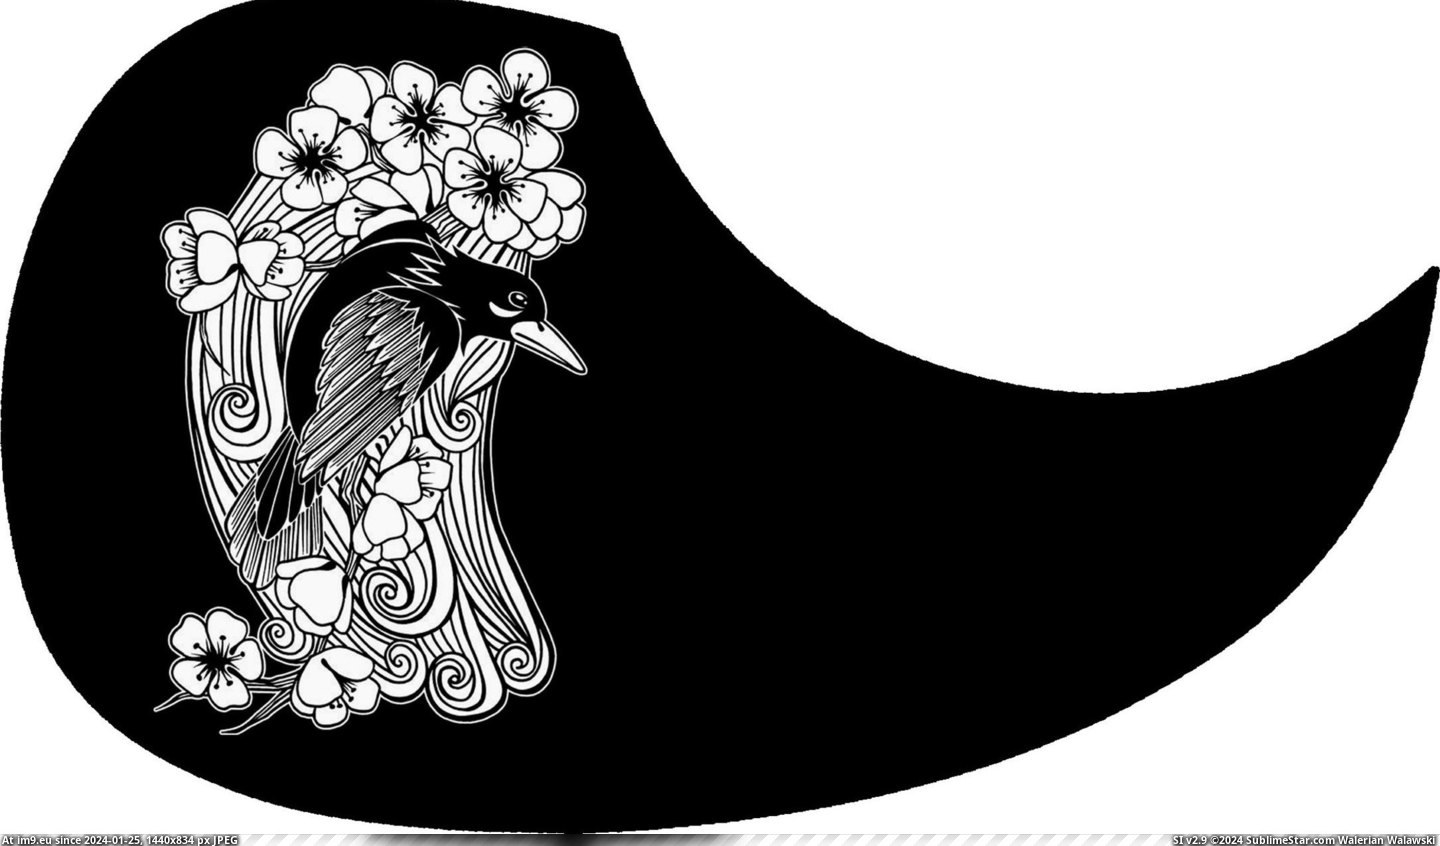 #Black #Bird #Guard #Pick Pick Guard - Black Bird Pic. (Bild von album Custom Pickguard Art))